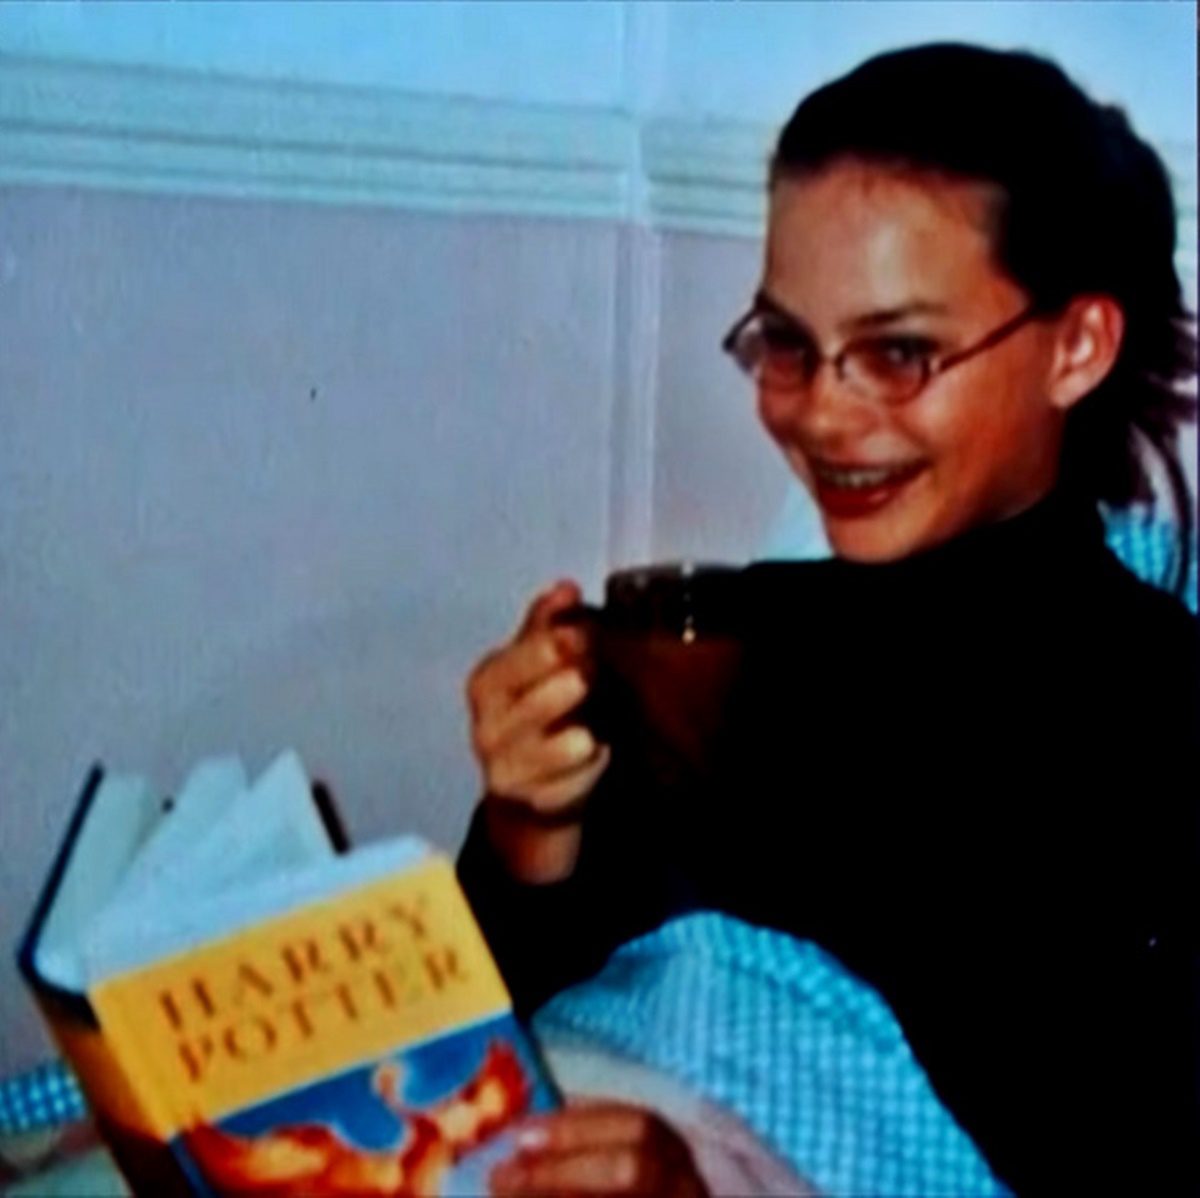 Mindenki őt csúfolta a külseje miatt - Így nézett ki Margot Robbie iskolás korában